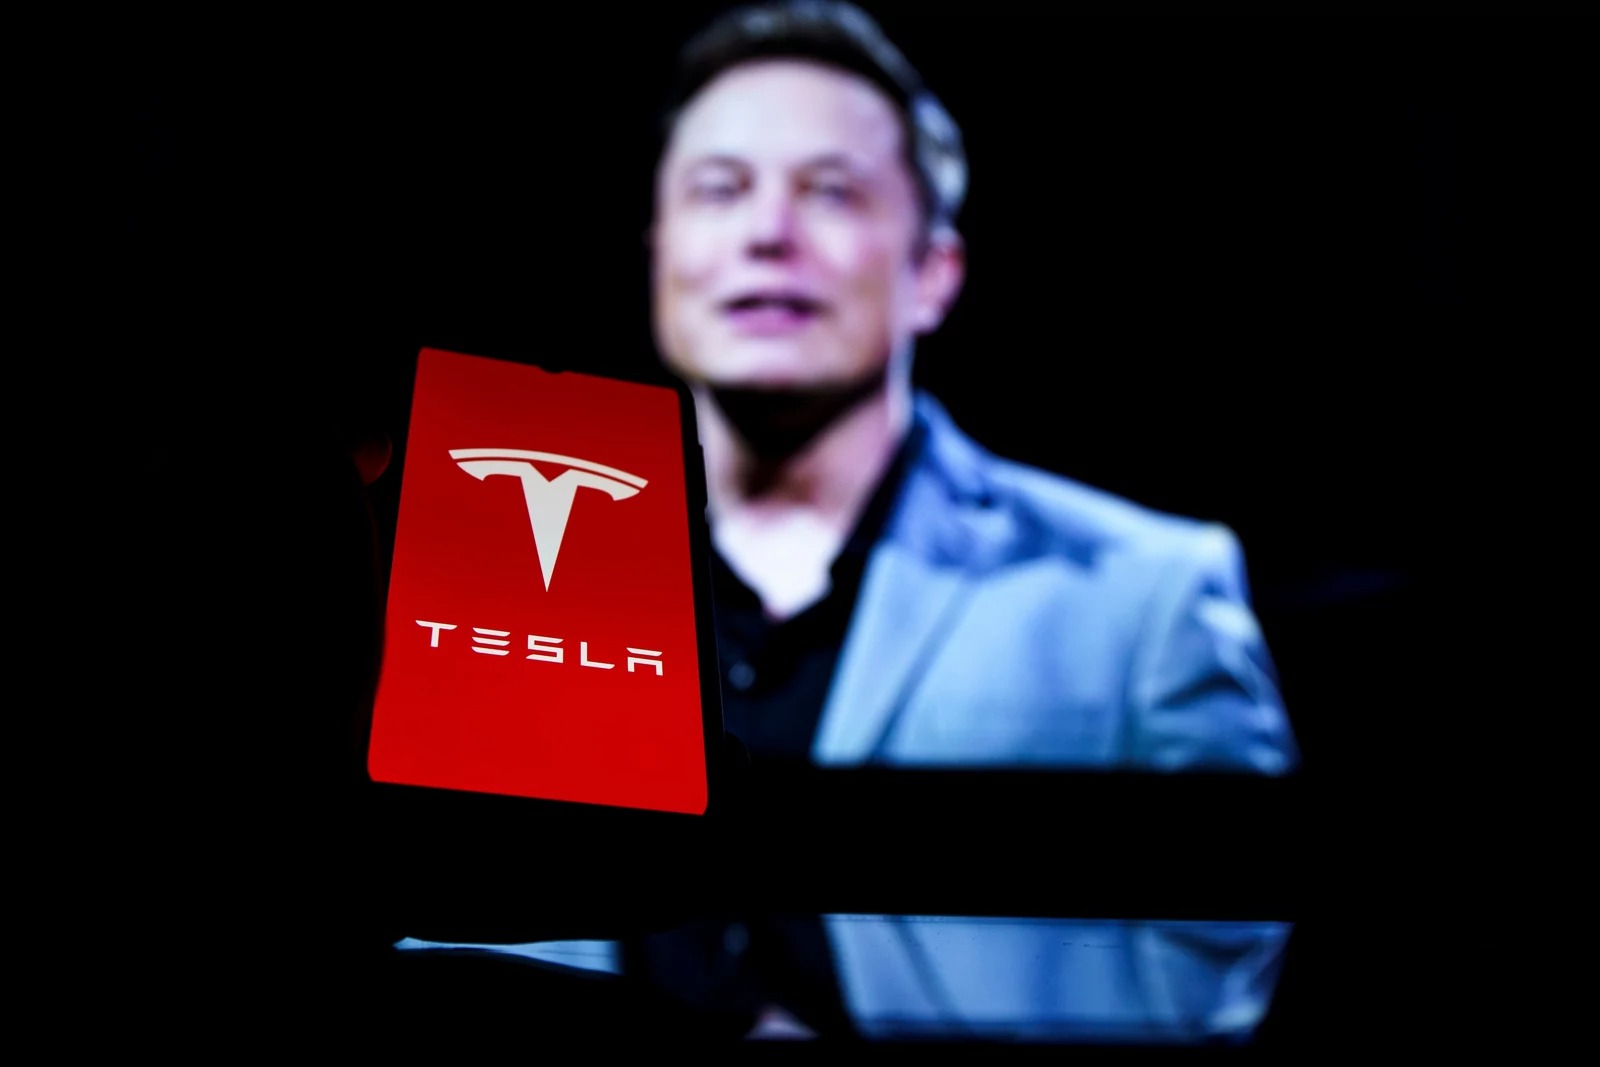 Elon Musk et les Robotaxis de Tesla : Pourquoi tant de retard ?